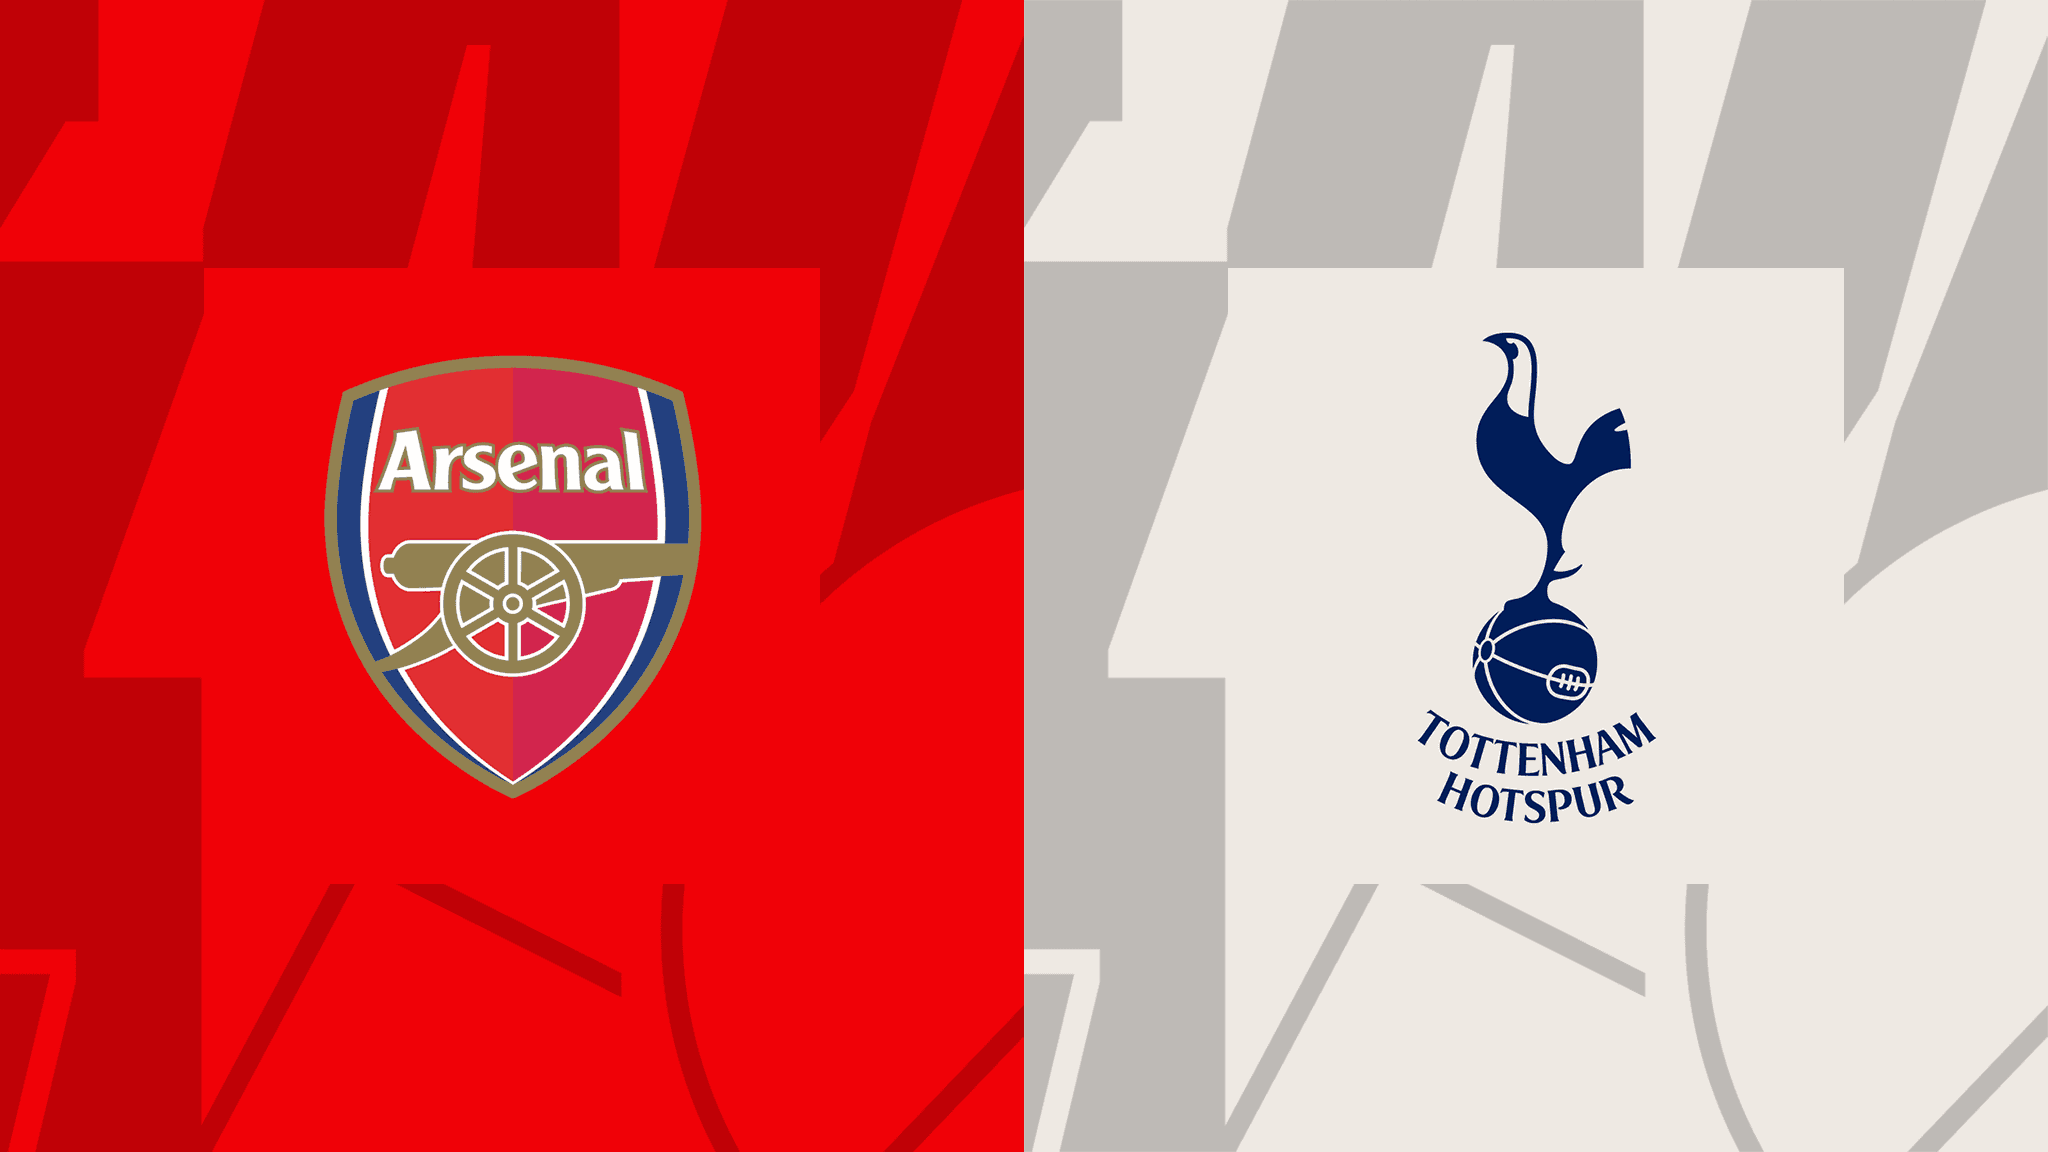  مشاهدة مباراة آرسنال و توتنهام هوتسبير بث مباشر 01/10/2022 Arsenal vs Tottenham Hotspur